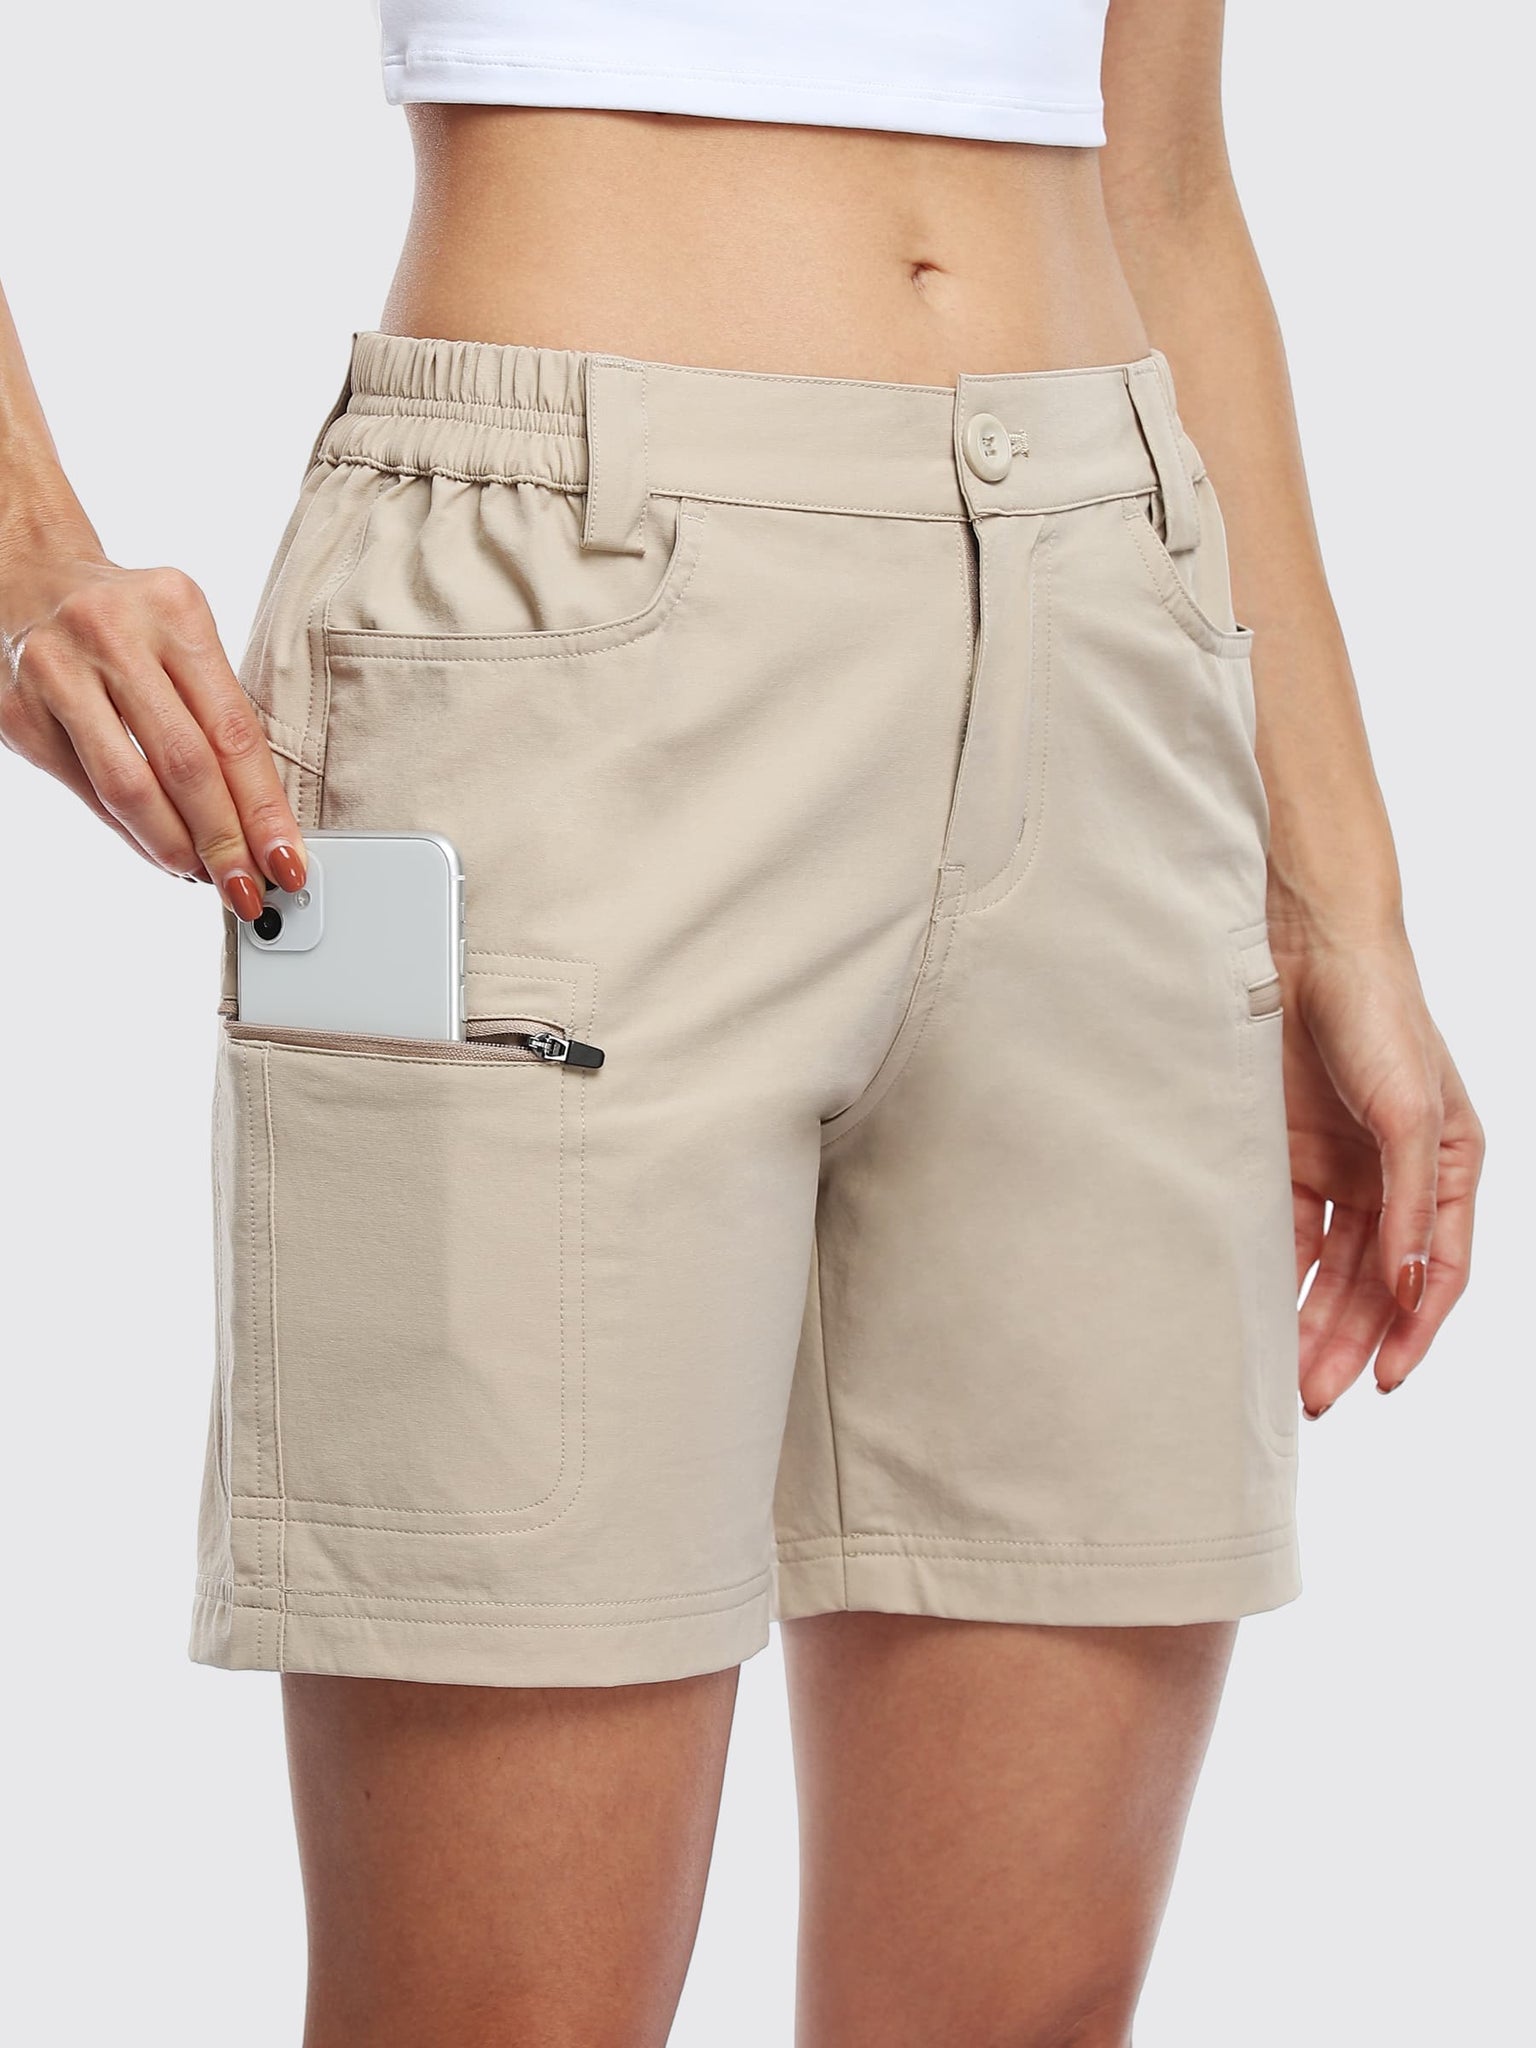 Willit Women's Outdoor Cargo Shorts 6 Inseam_Khaki_model4